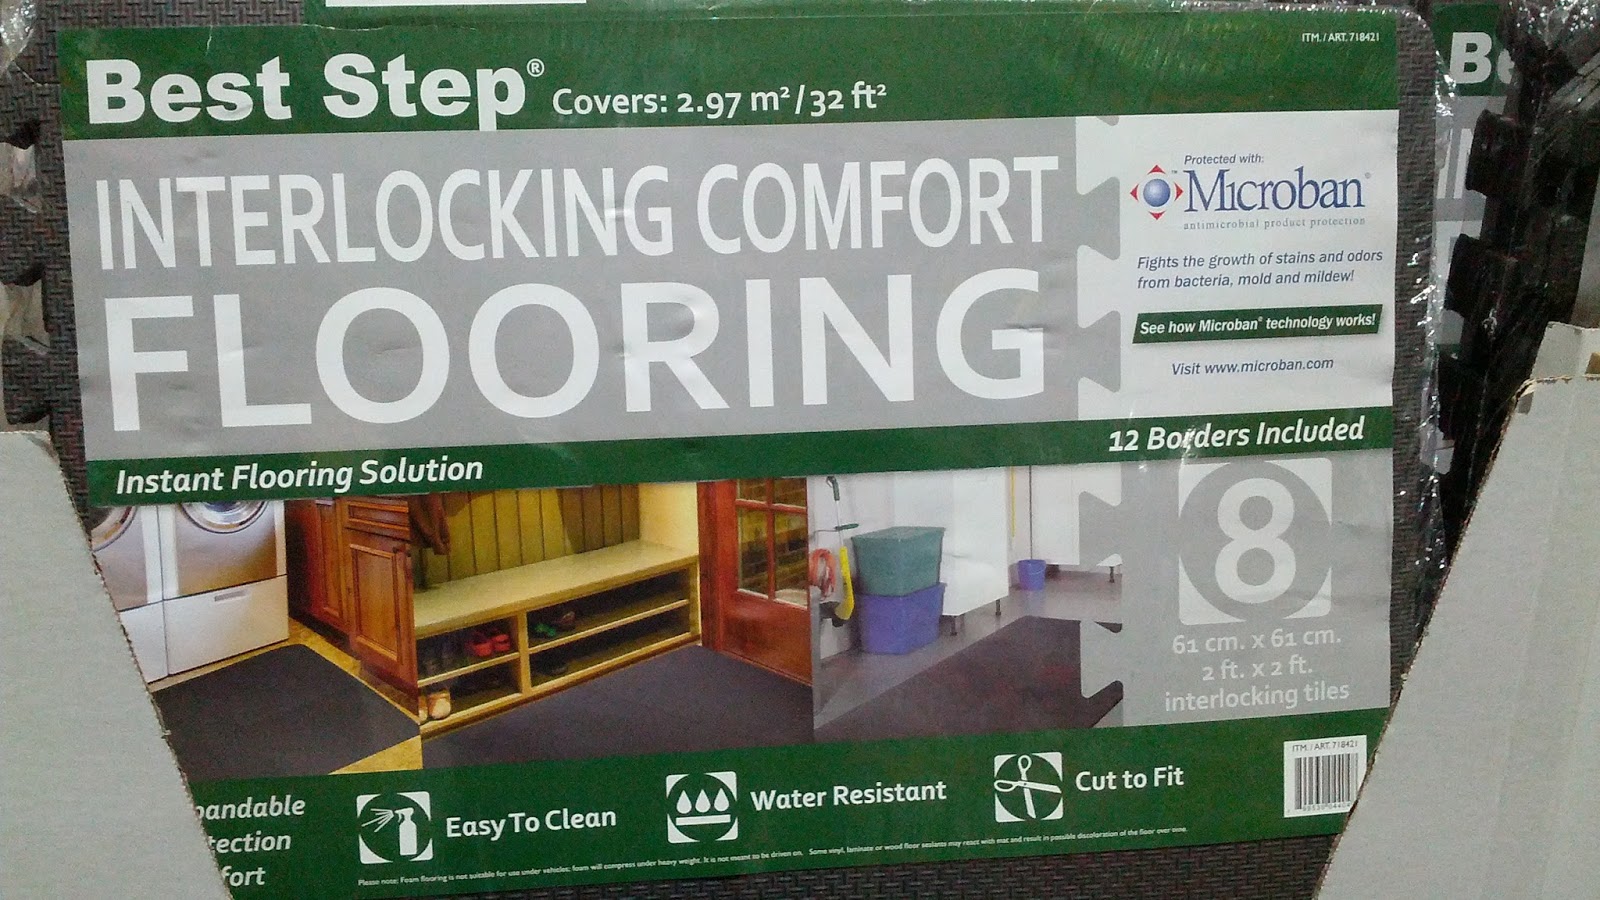 Best Step Interlocking Comfort Flooring Tiles Costco Weekender